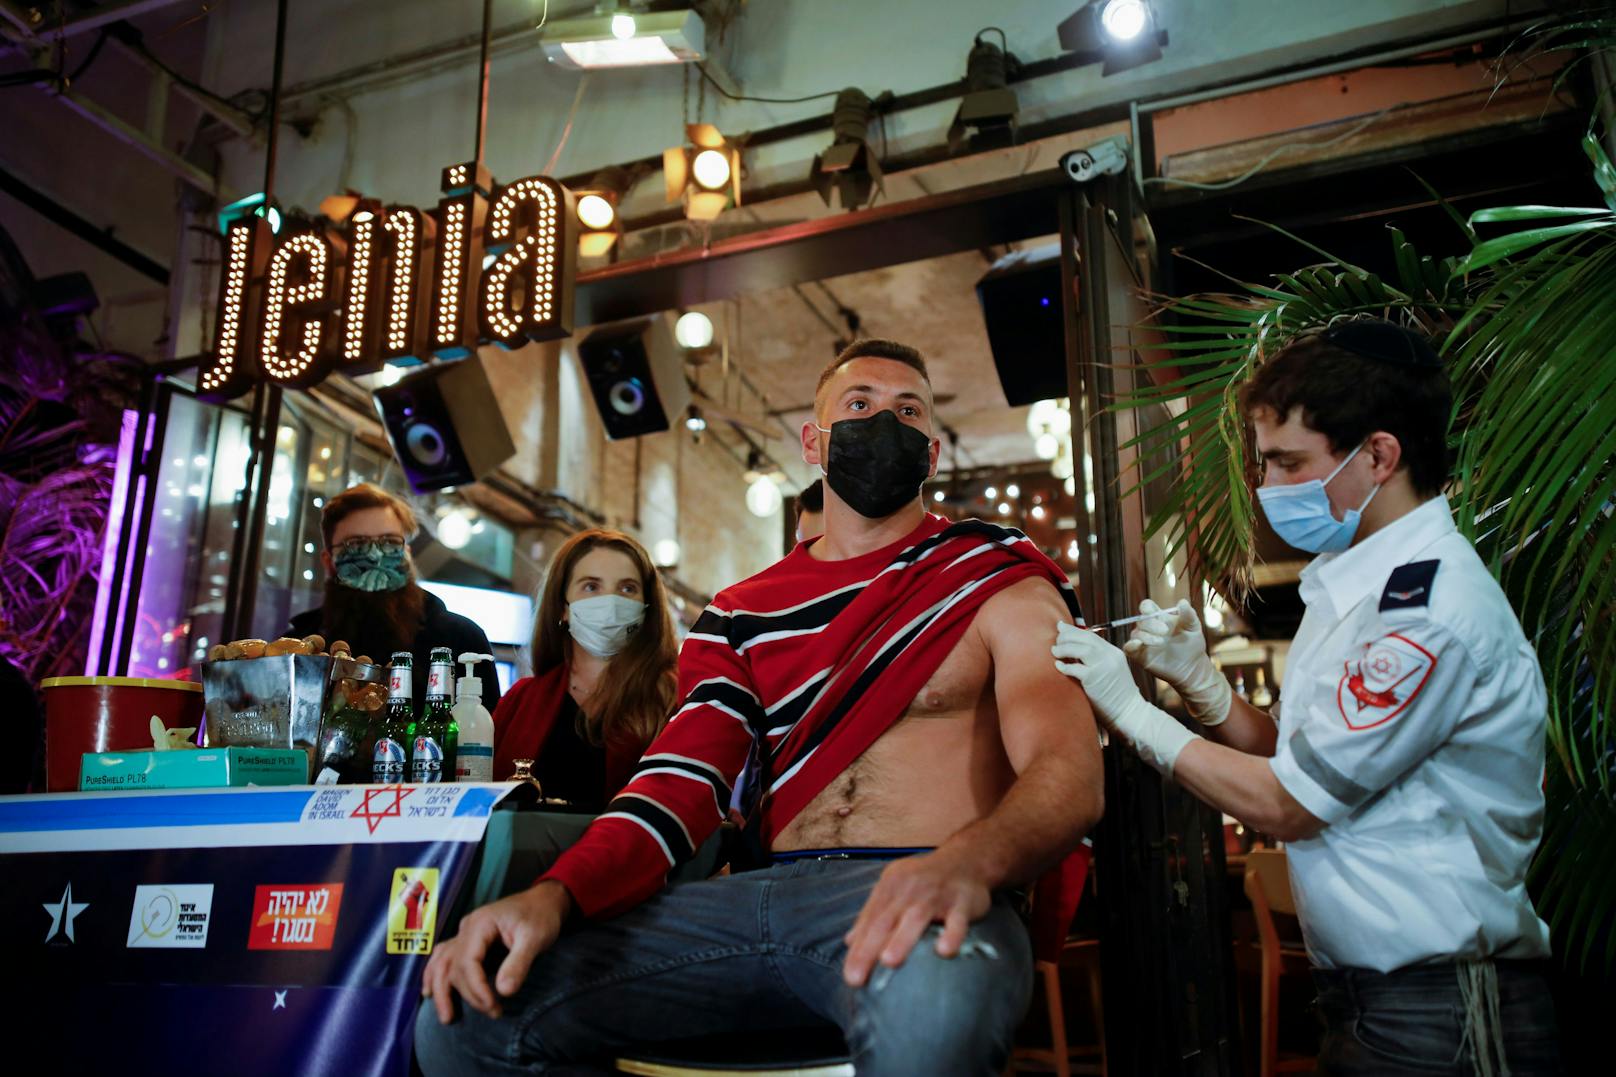 In dieser Bar in Tel Aviv bekommt jeder, der sich impfen lässt, einen Gratis-Drink dazu.